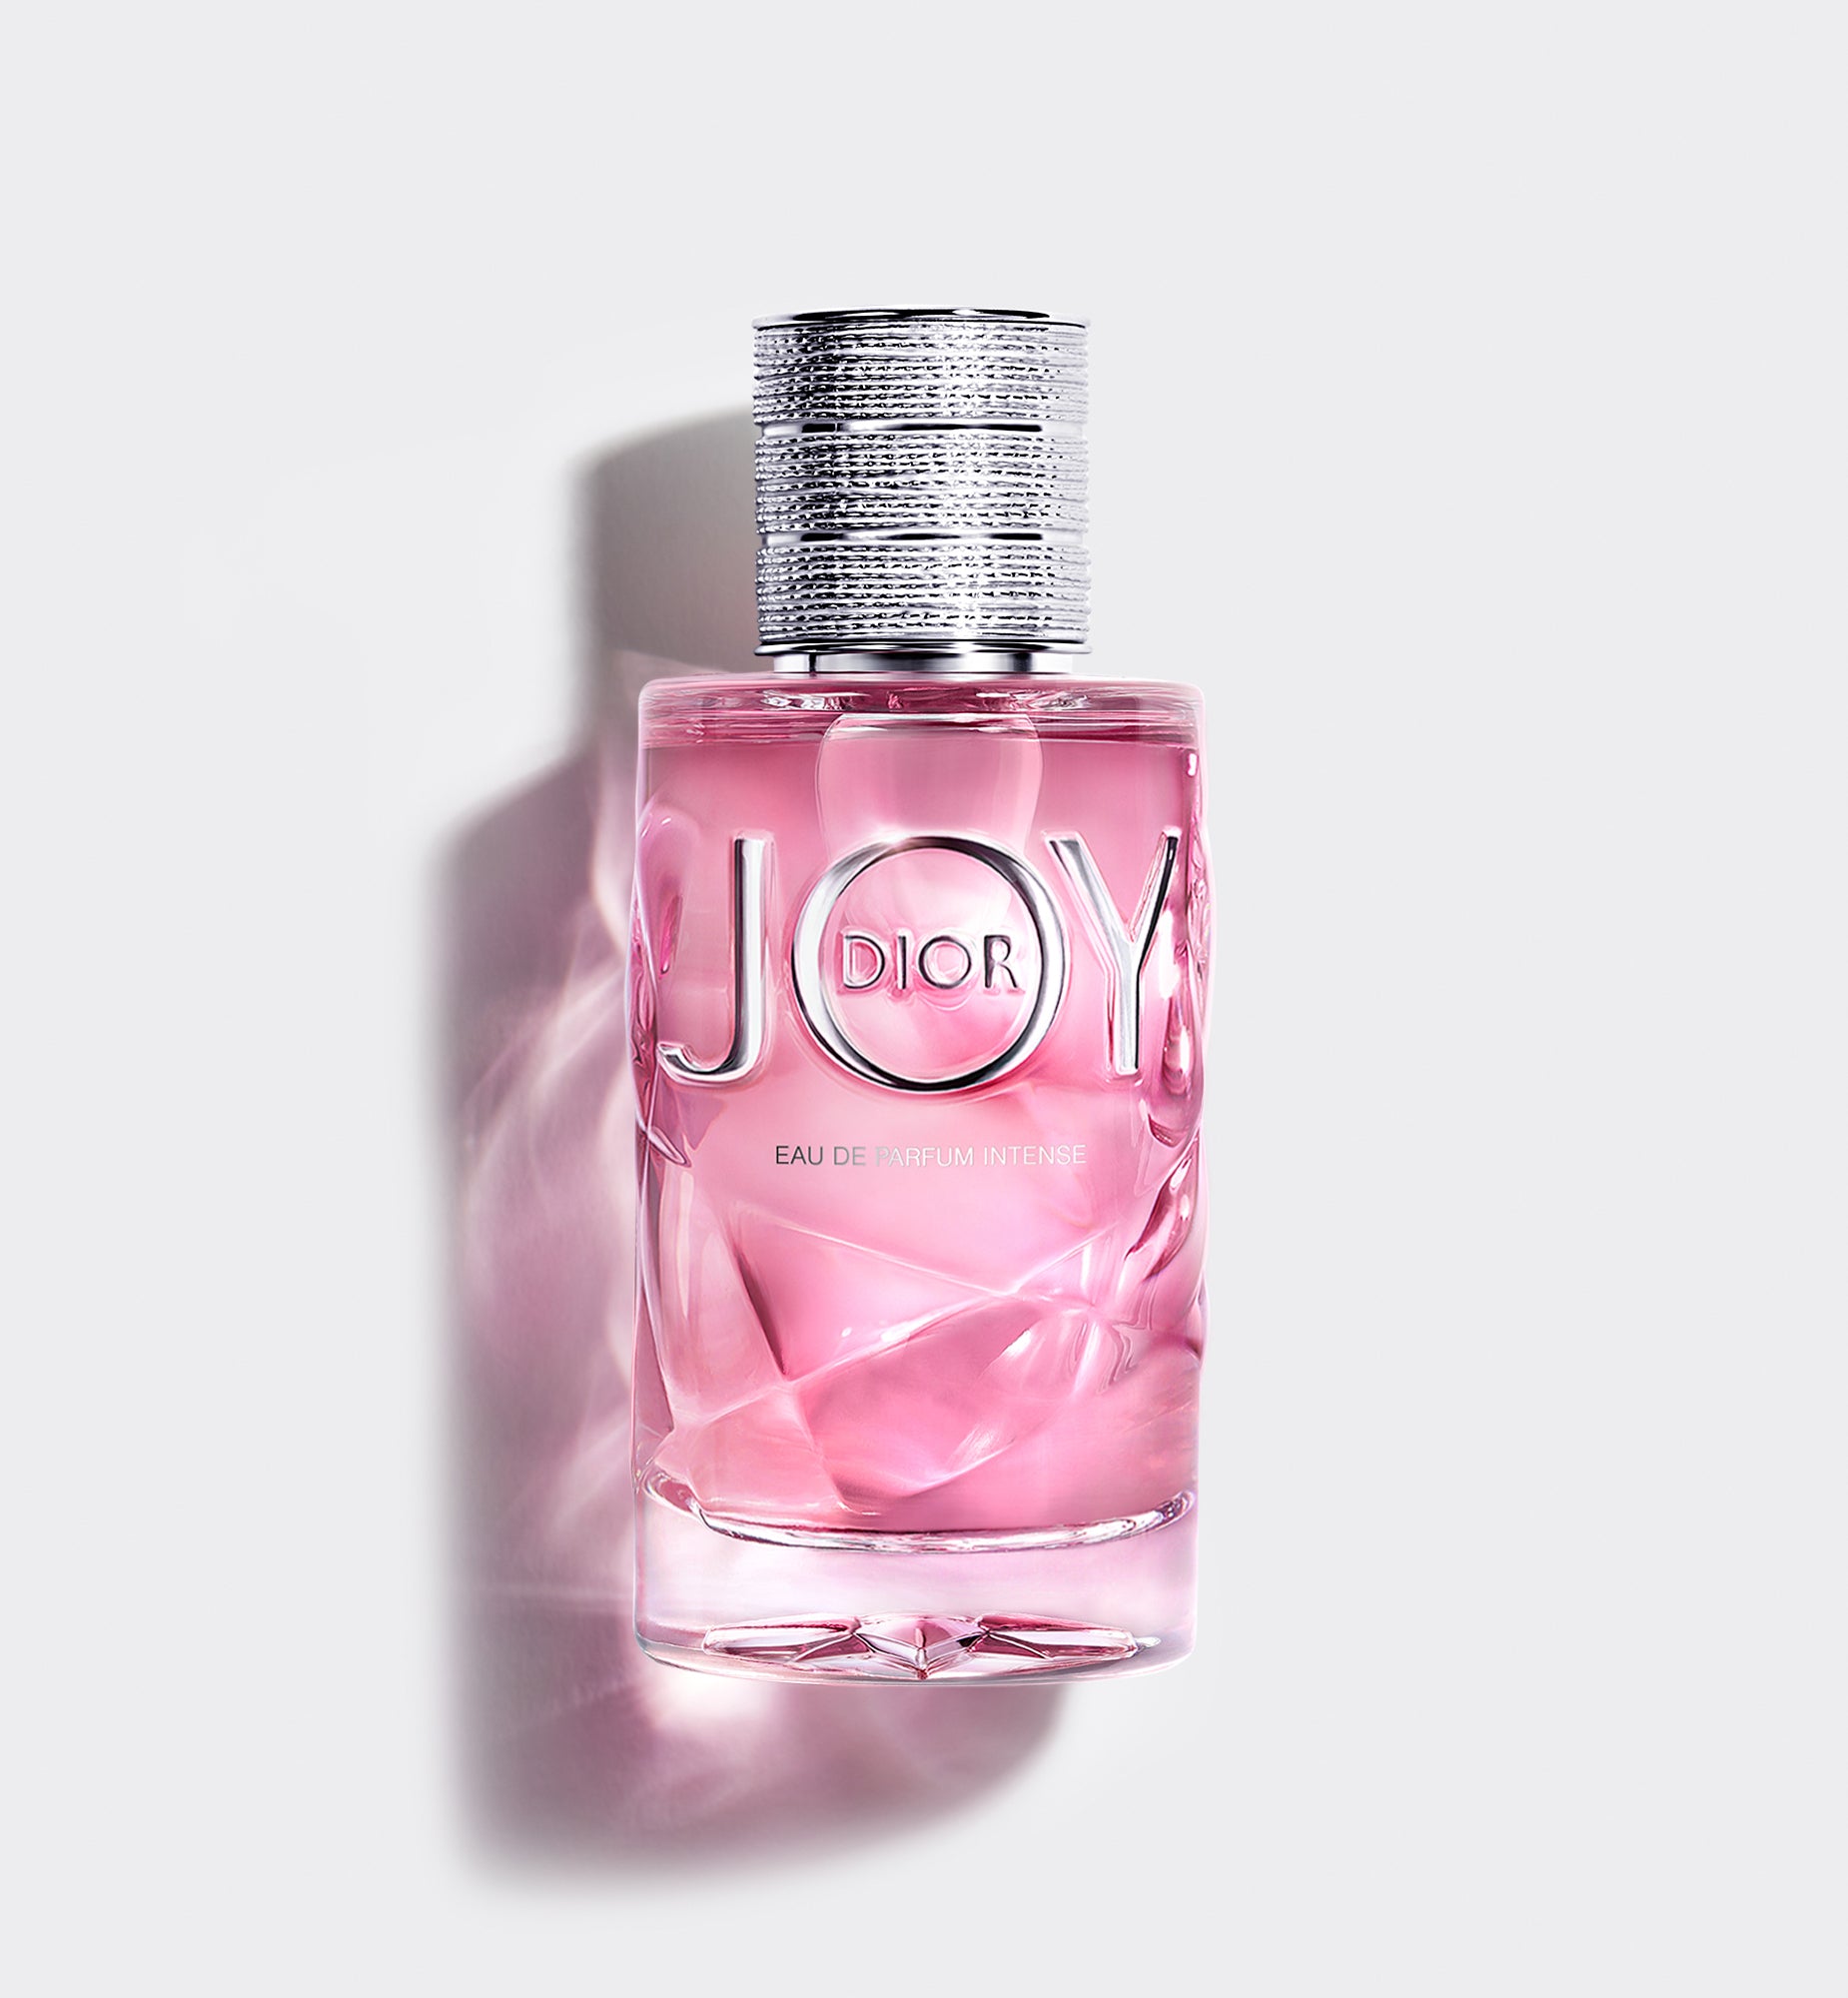 JOY BY DIOR—Eau de parfum intense—น้ำหอม Eau de parfum intense